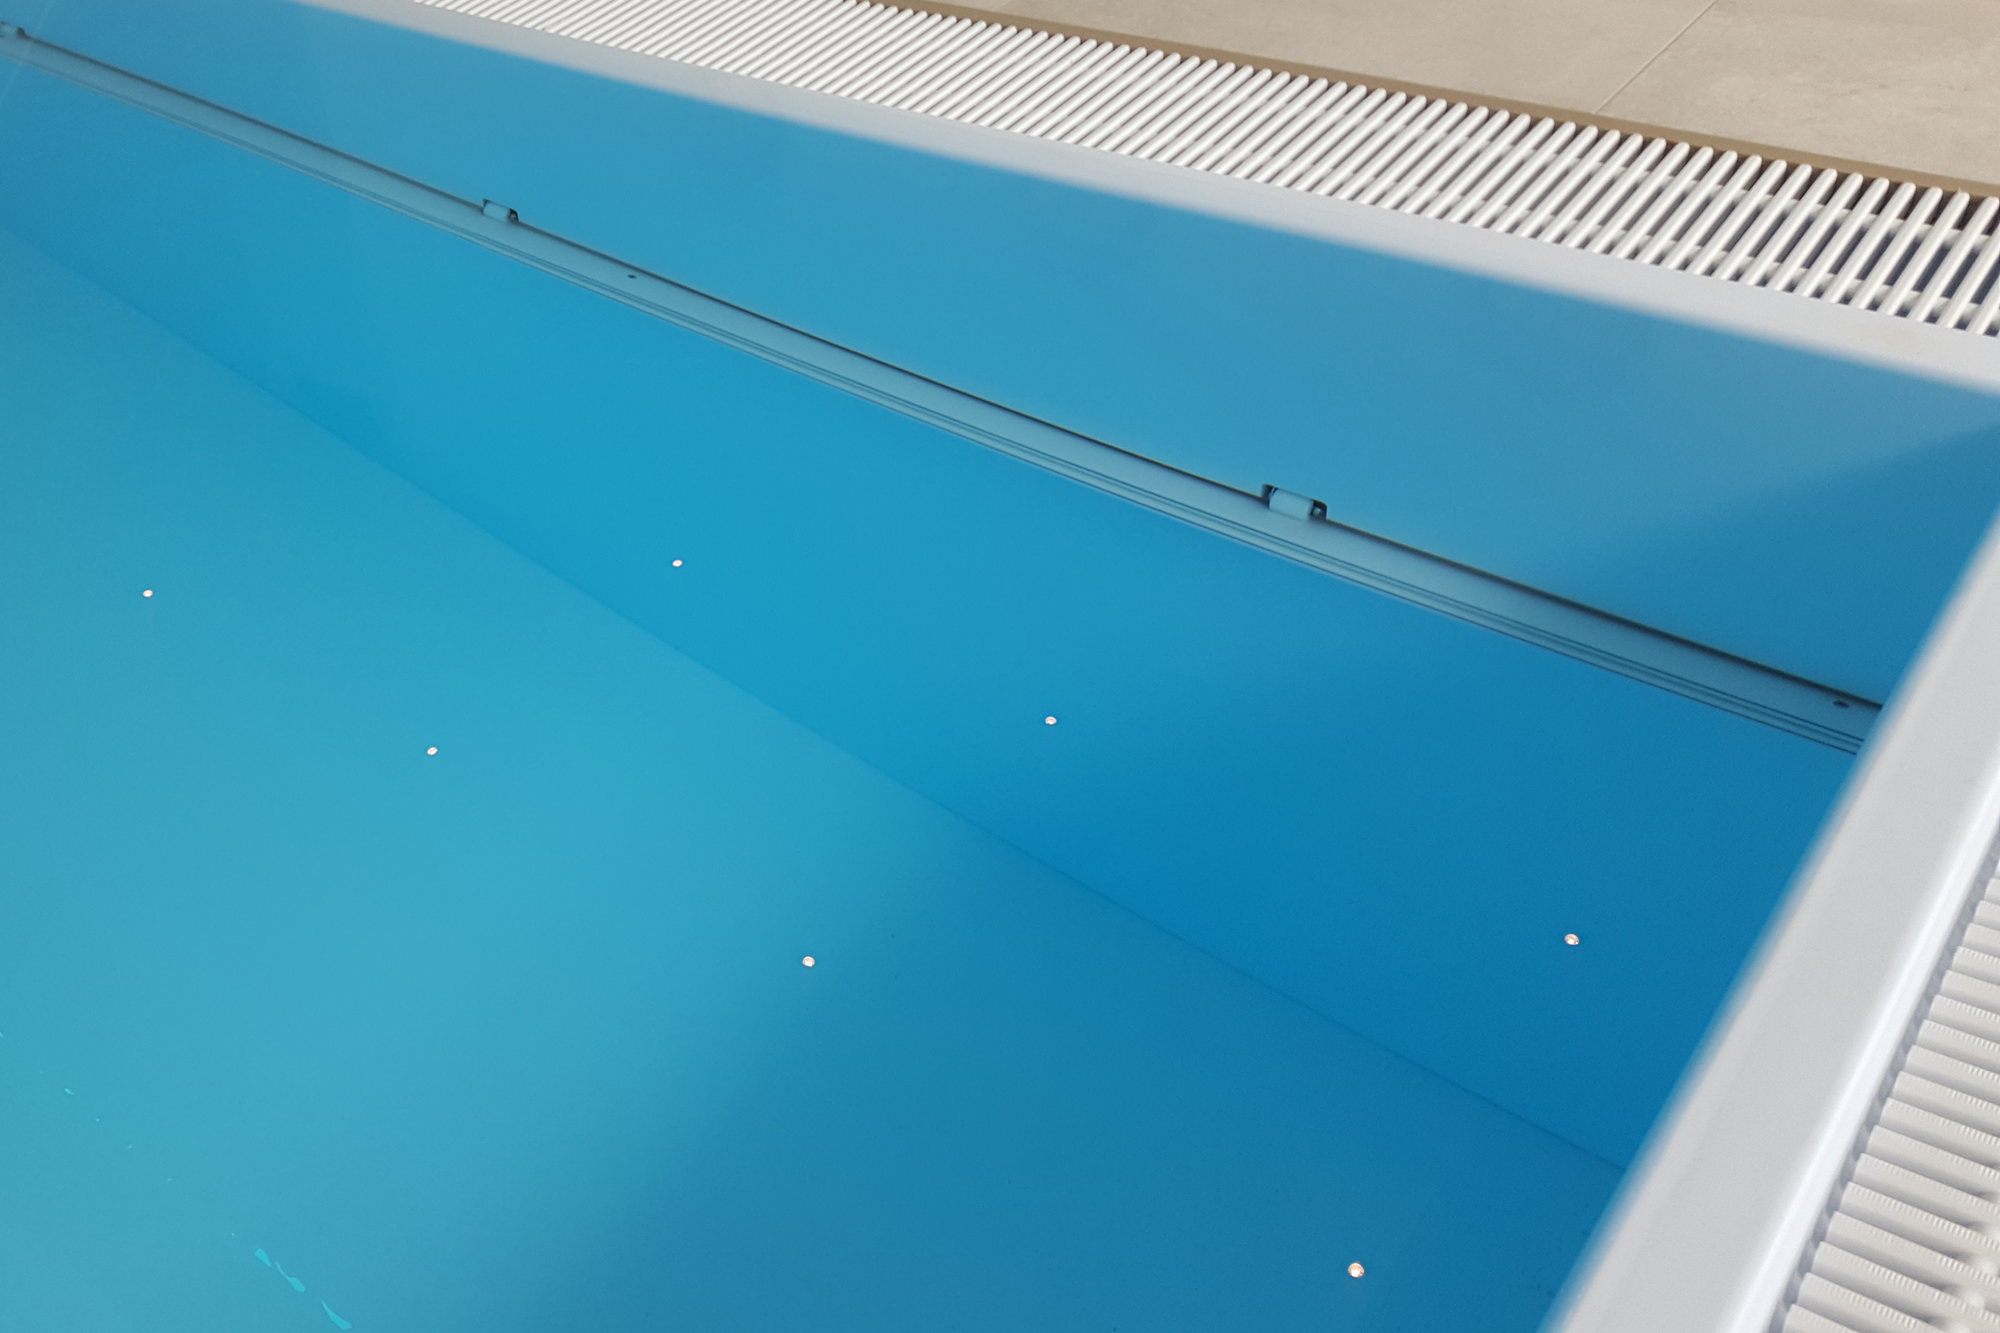 Aufgrund perfekter Details ist ein Veltmann Pool ein perfektes Schwimmbecken